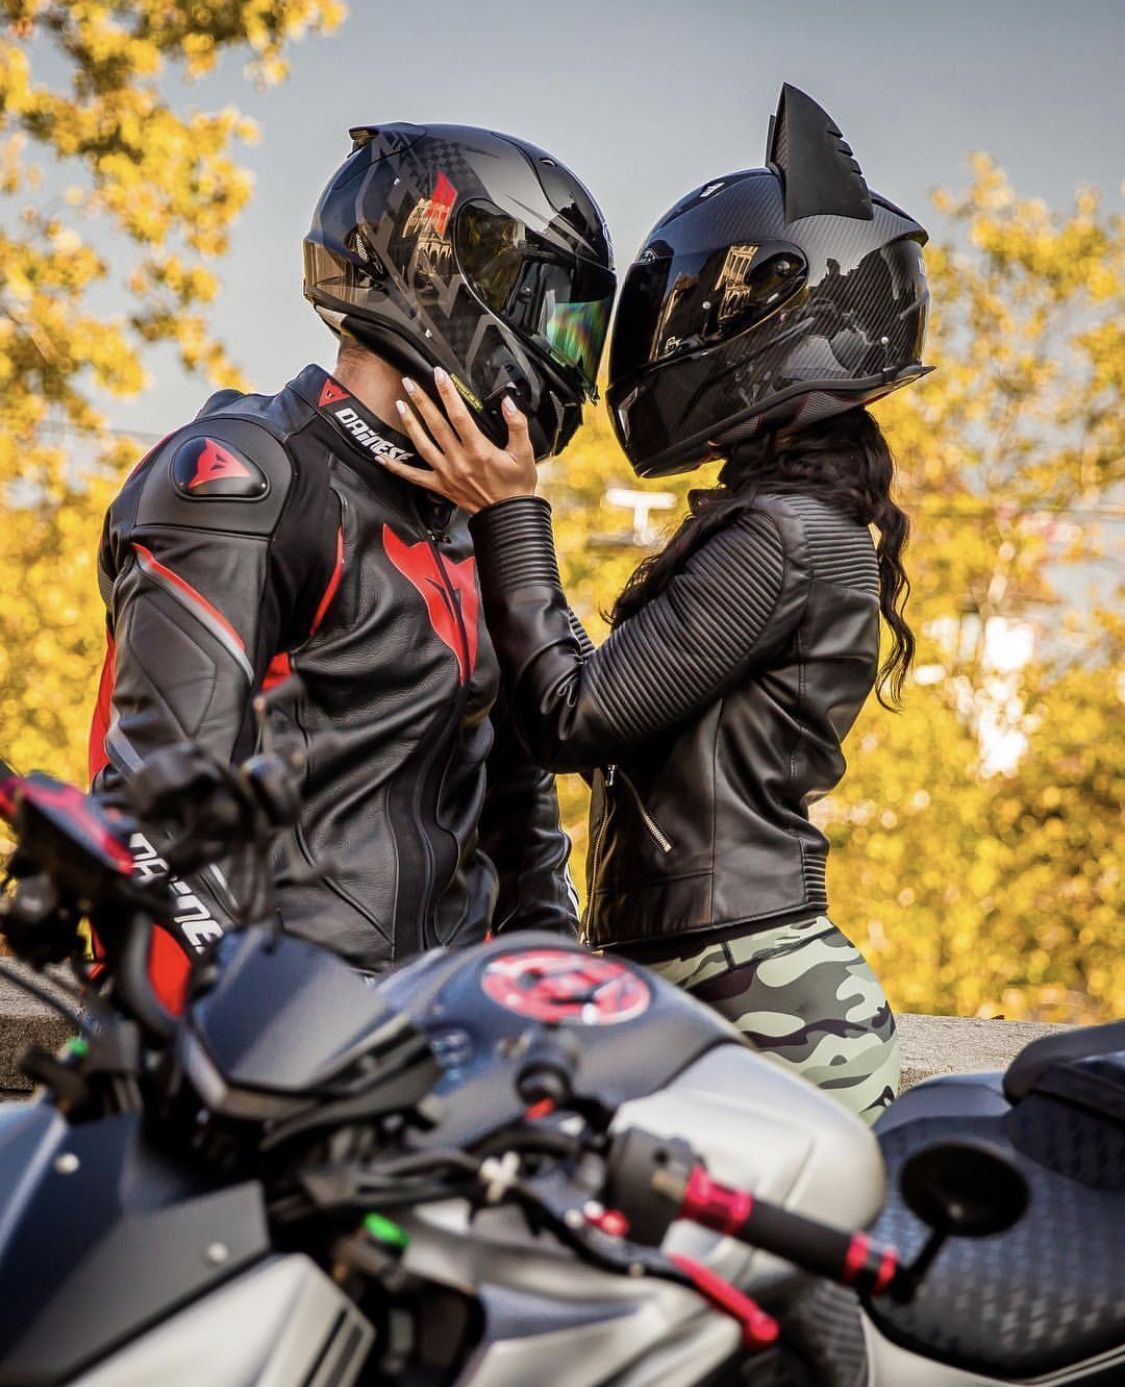 Motorcycle Love is Real. Motorcycle couple, Bike photohoot, Bike couple